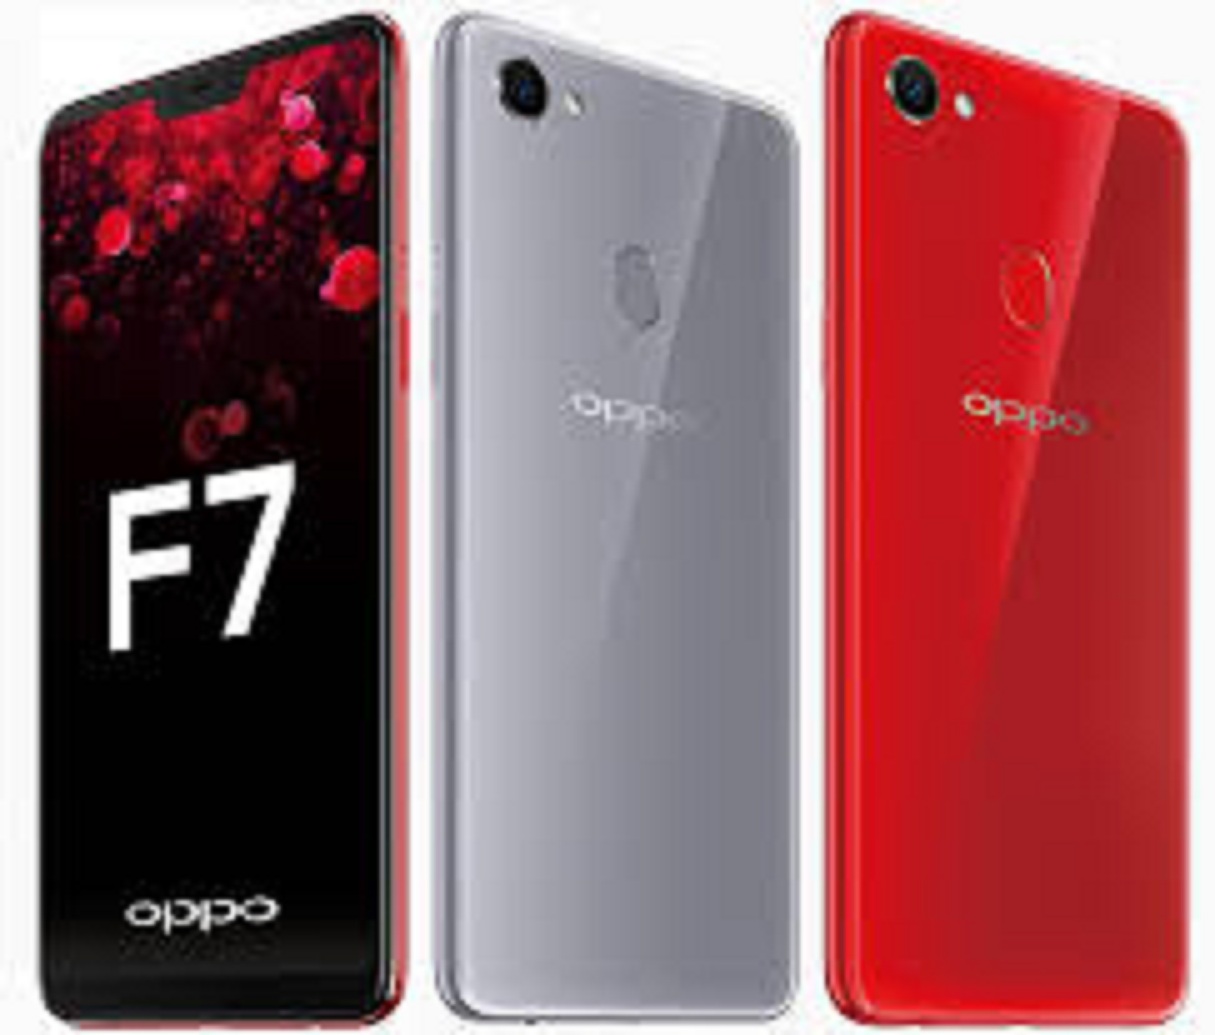 điện thoại Oppo F7 (Oppo F 7) Chính Hãng 2sim ram 8G/512G, cấu hình CPU siêu Cao Cấp, đánh mọi Game nặng chất